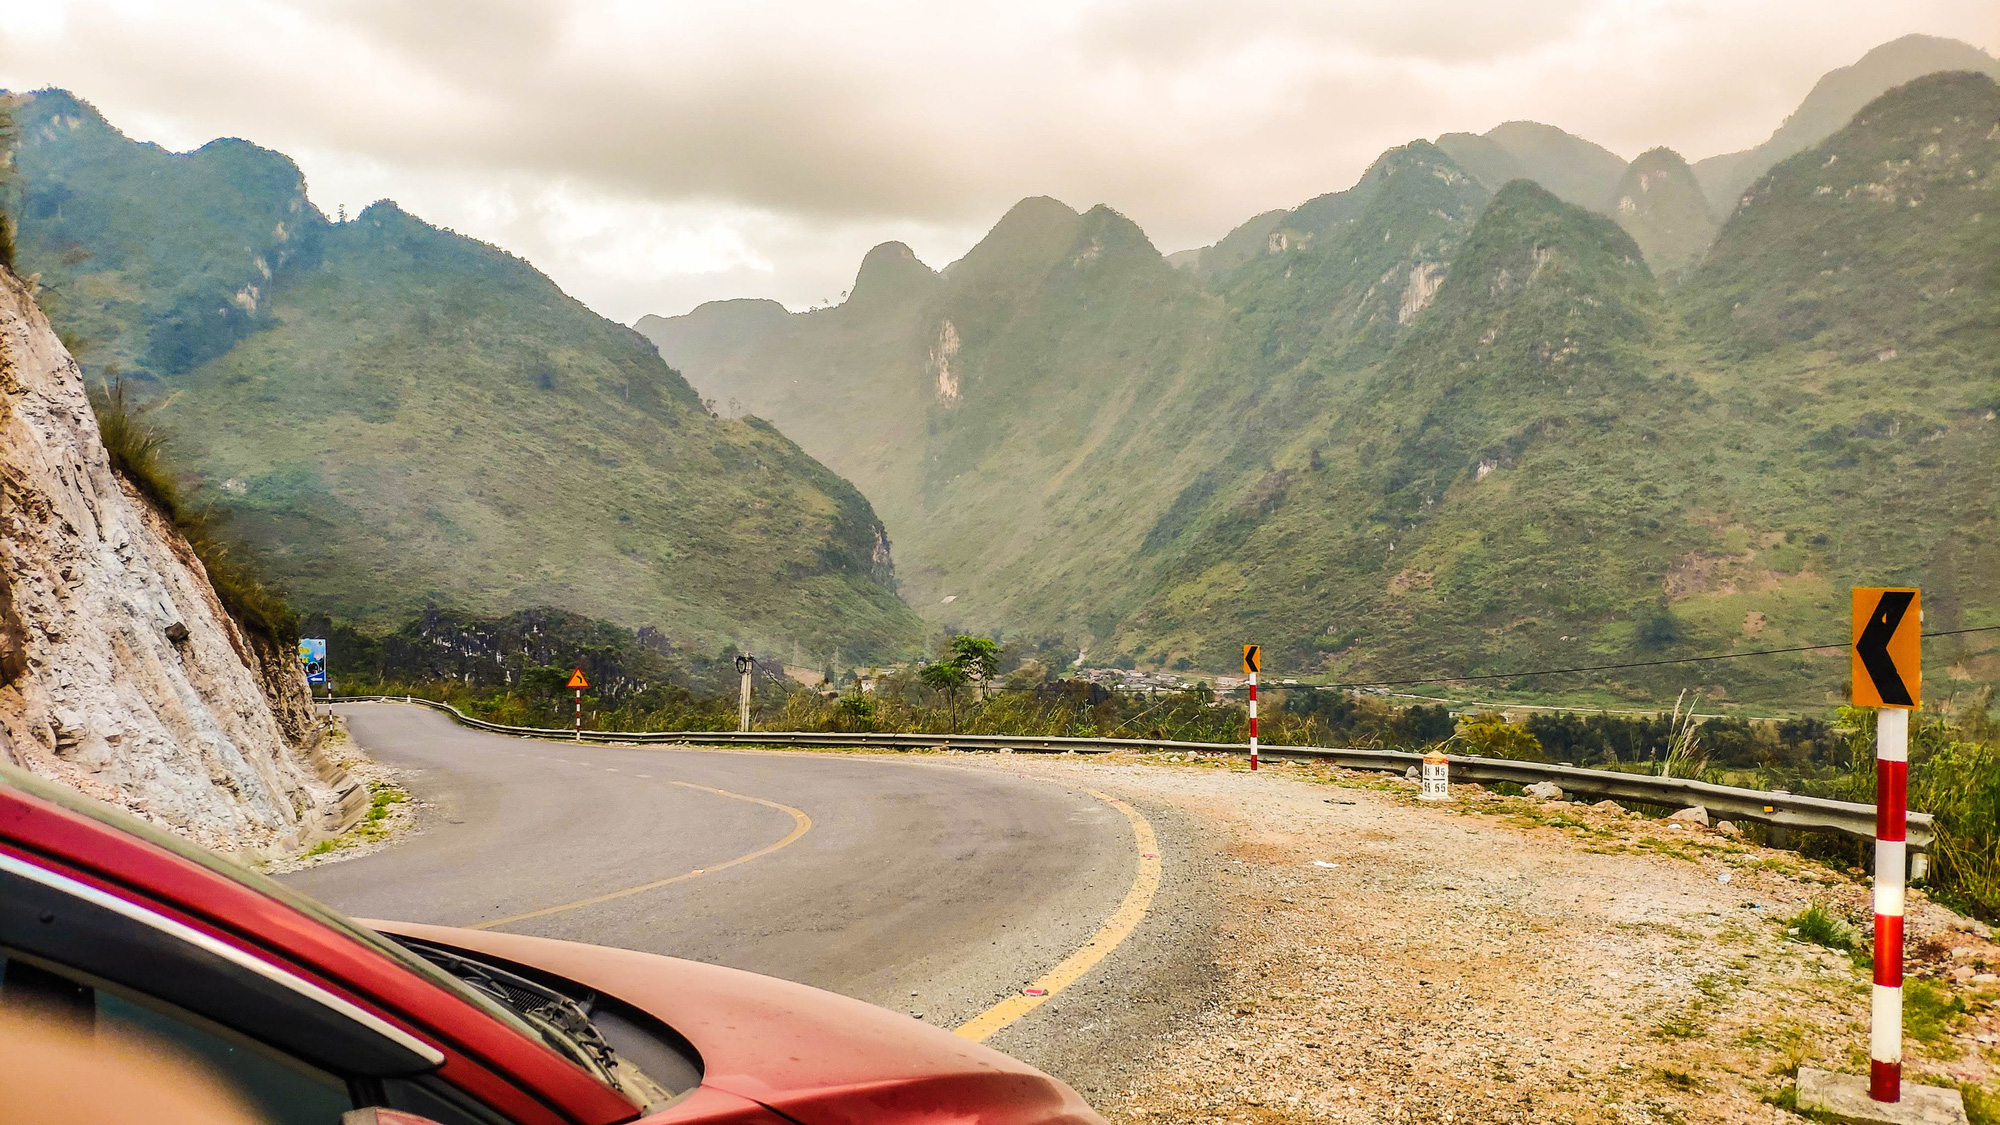 Xuyên Việt hơn 3.500km cùng Mazda2, người dùng đánh giá: Bốc, lái hay, tiết kiệm xăng nhưng chật và hơi ồn - Ảnh 6.